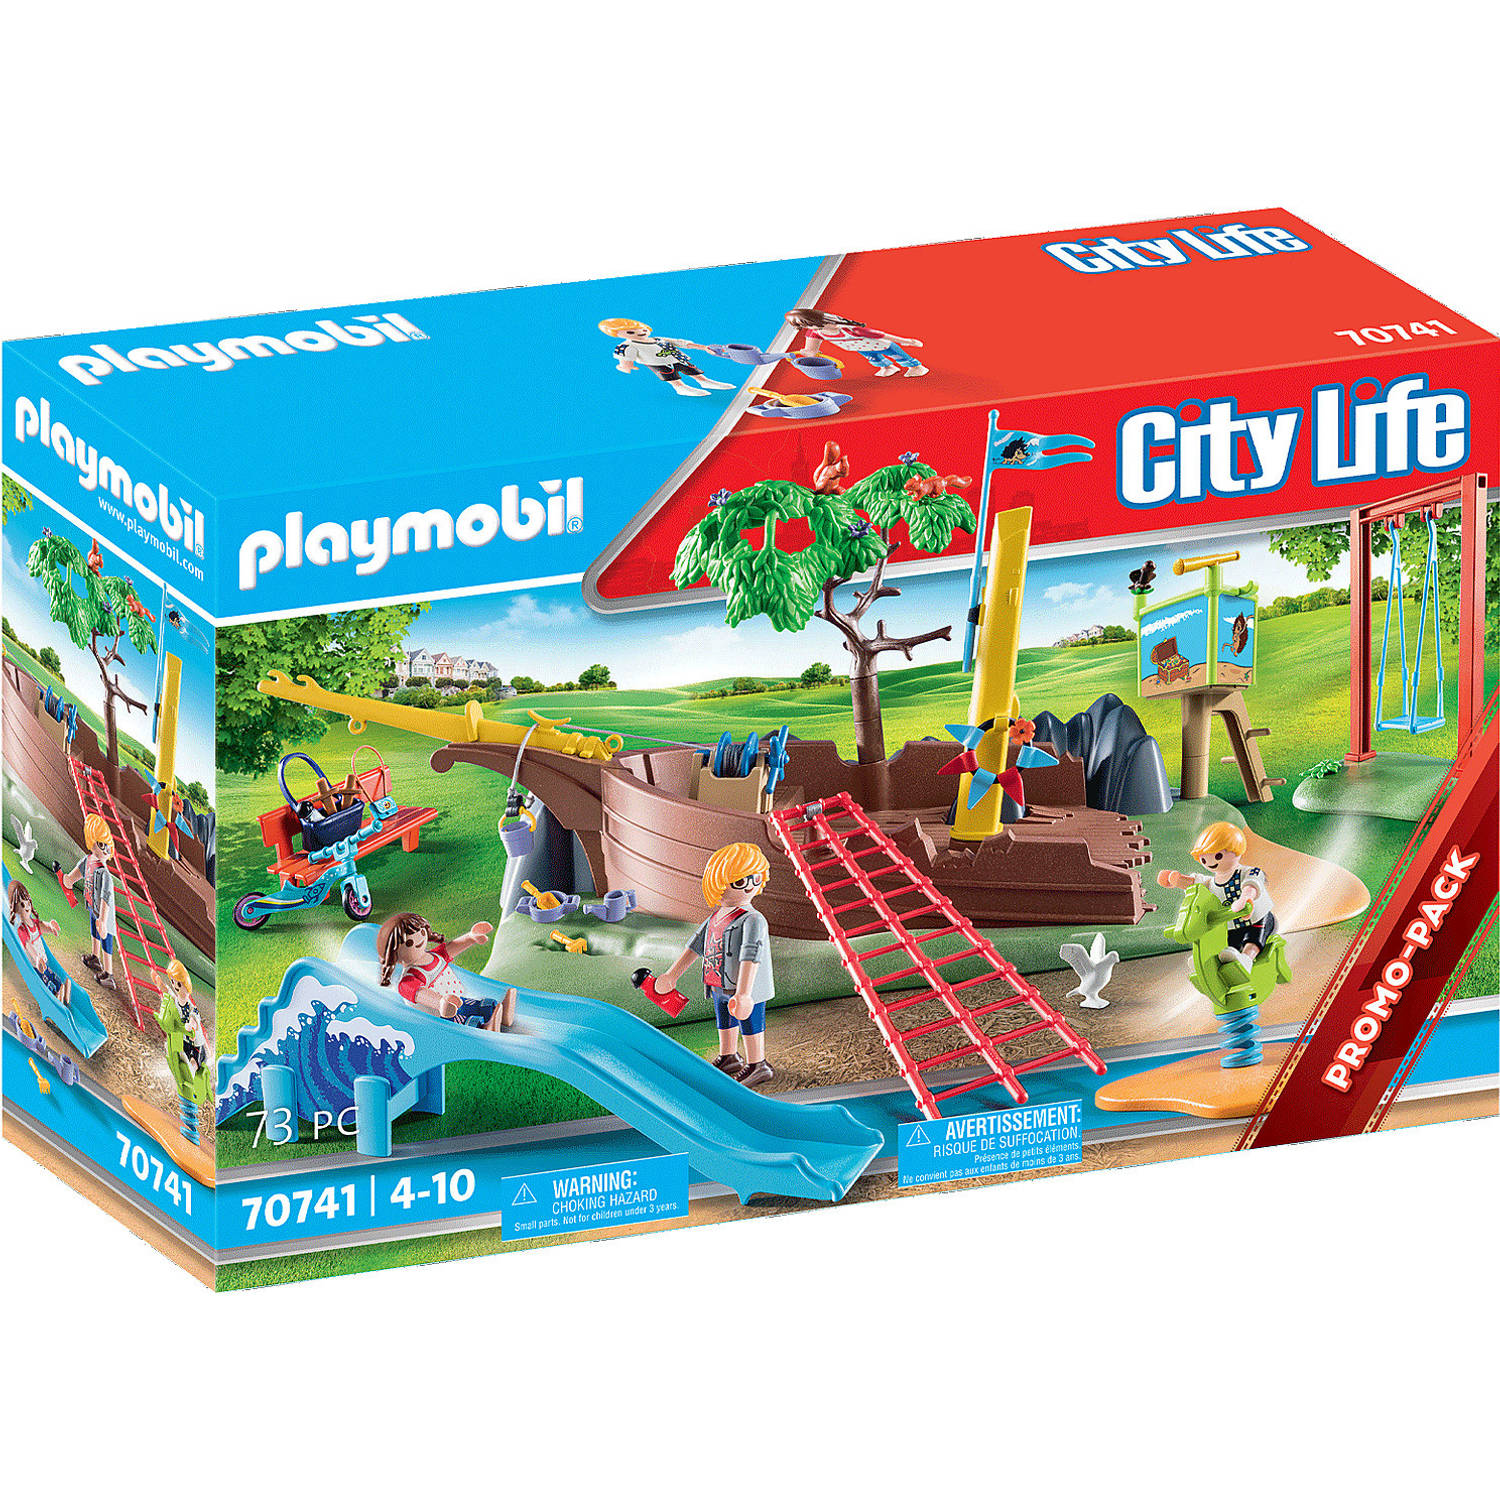 Playmobil City Life 70741 avontuurlijk speeltuin met scheepswrak